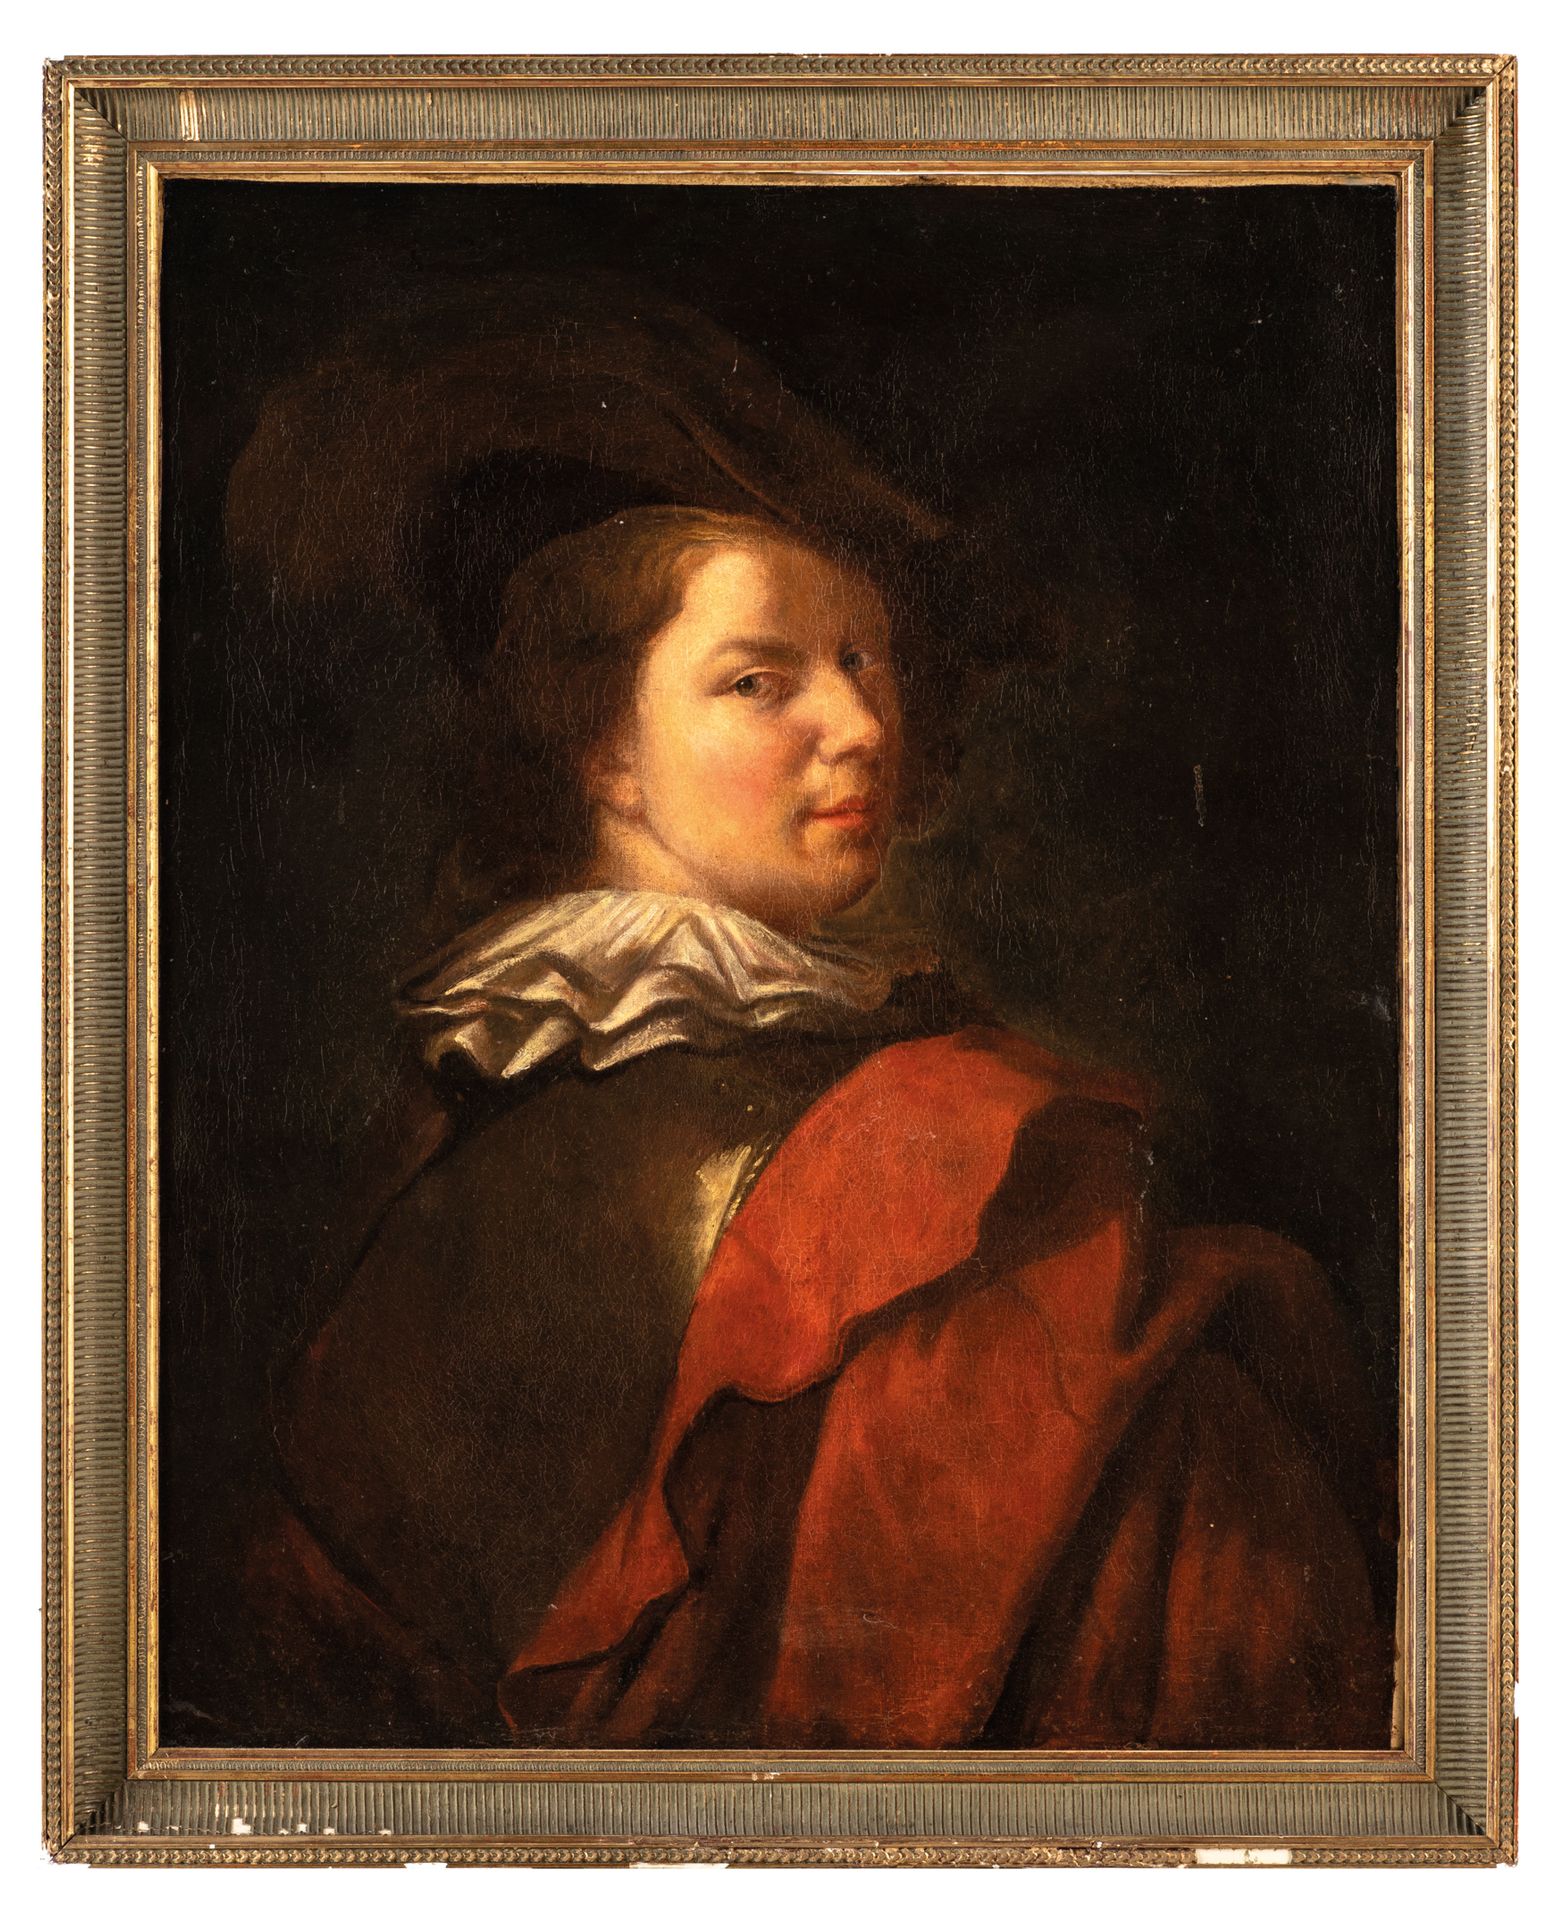 ALEXIS GRIMOU (Argenteuil, 1678 - Paris, 1733)
Portrait of a young man with a re&hellip;